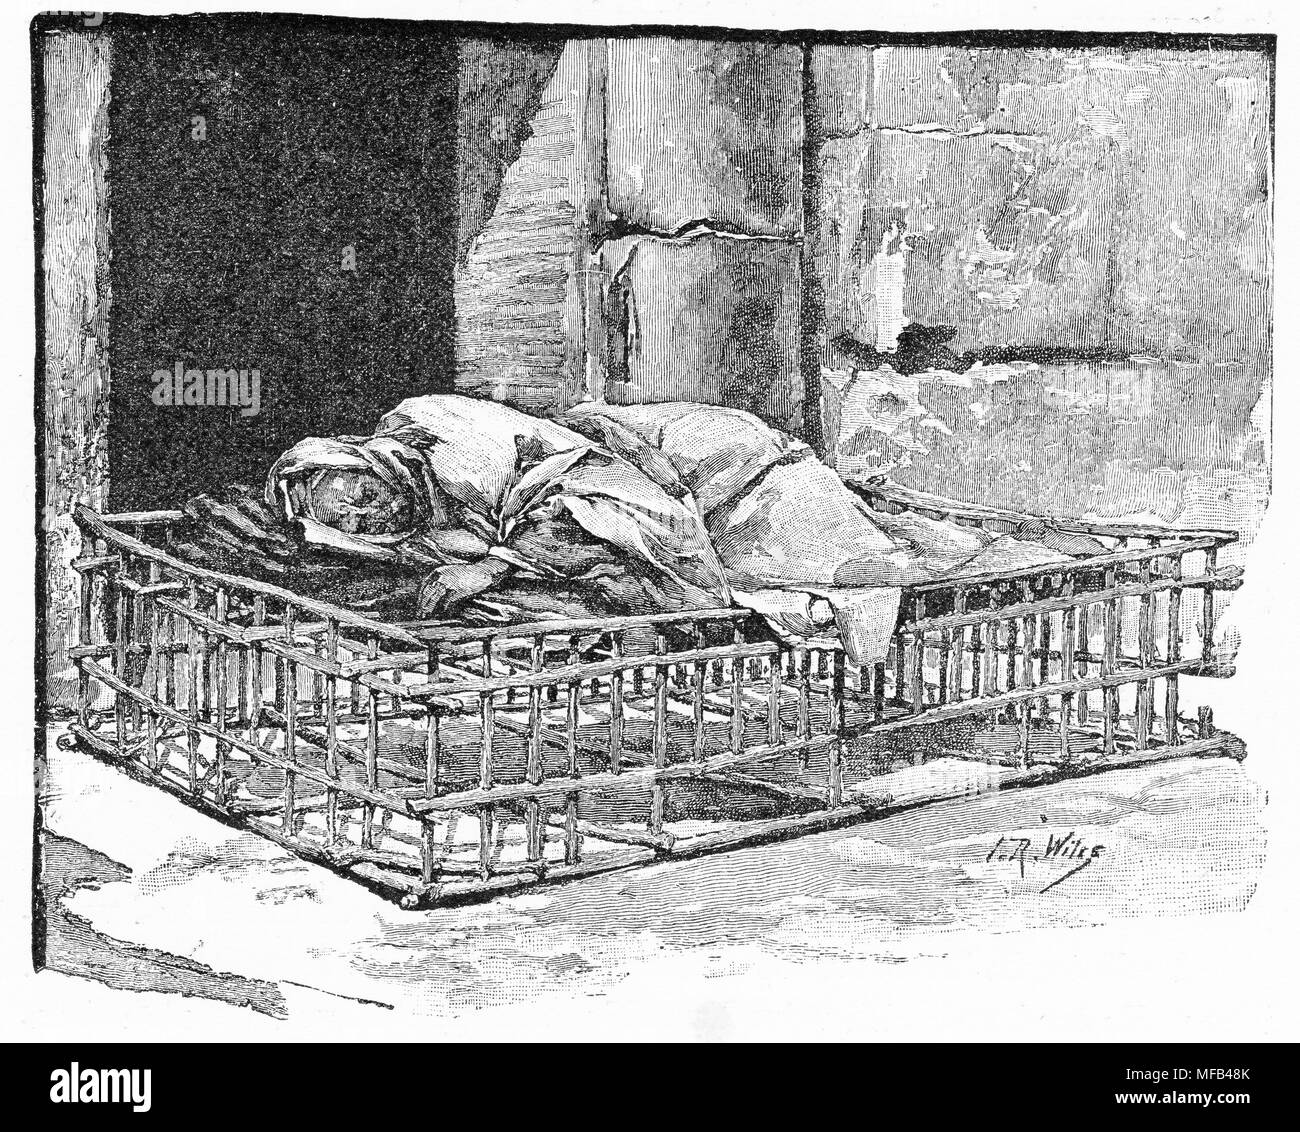 Incisione del detentore del cancello in Gerusalemme, dormire su un letto in legno telaio. Da un'incisione originale nel 1891 edizione di nella scrittura terre da Edward L Wilson Foto Stock